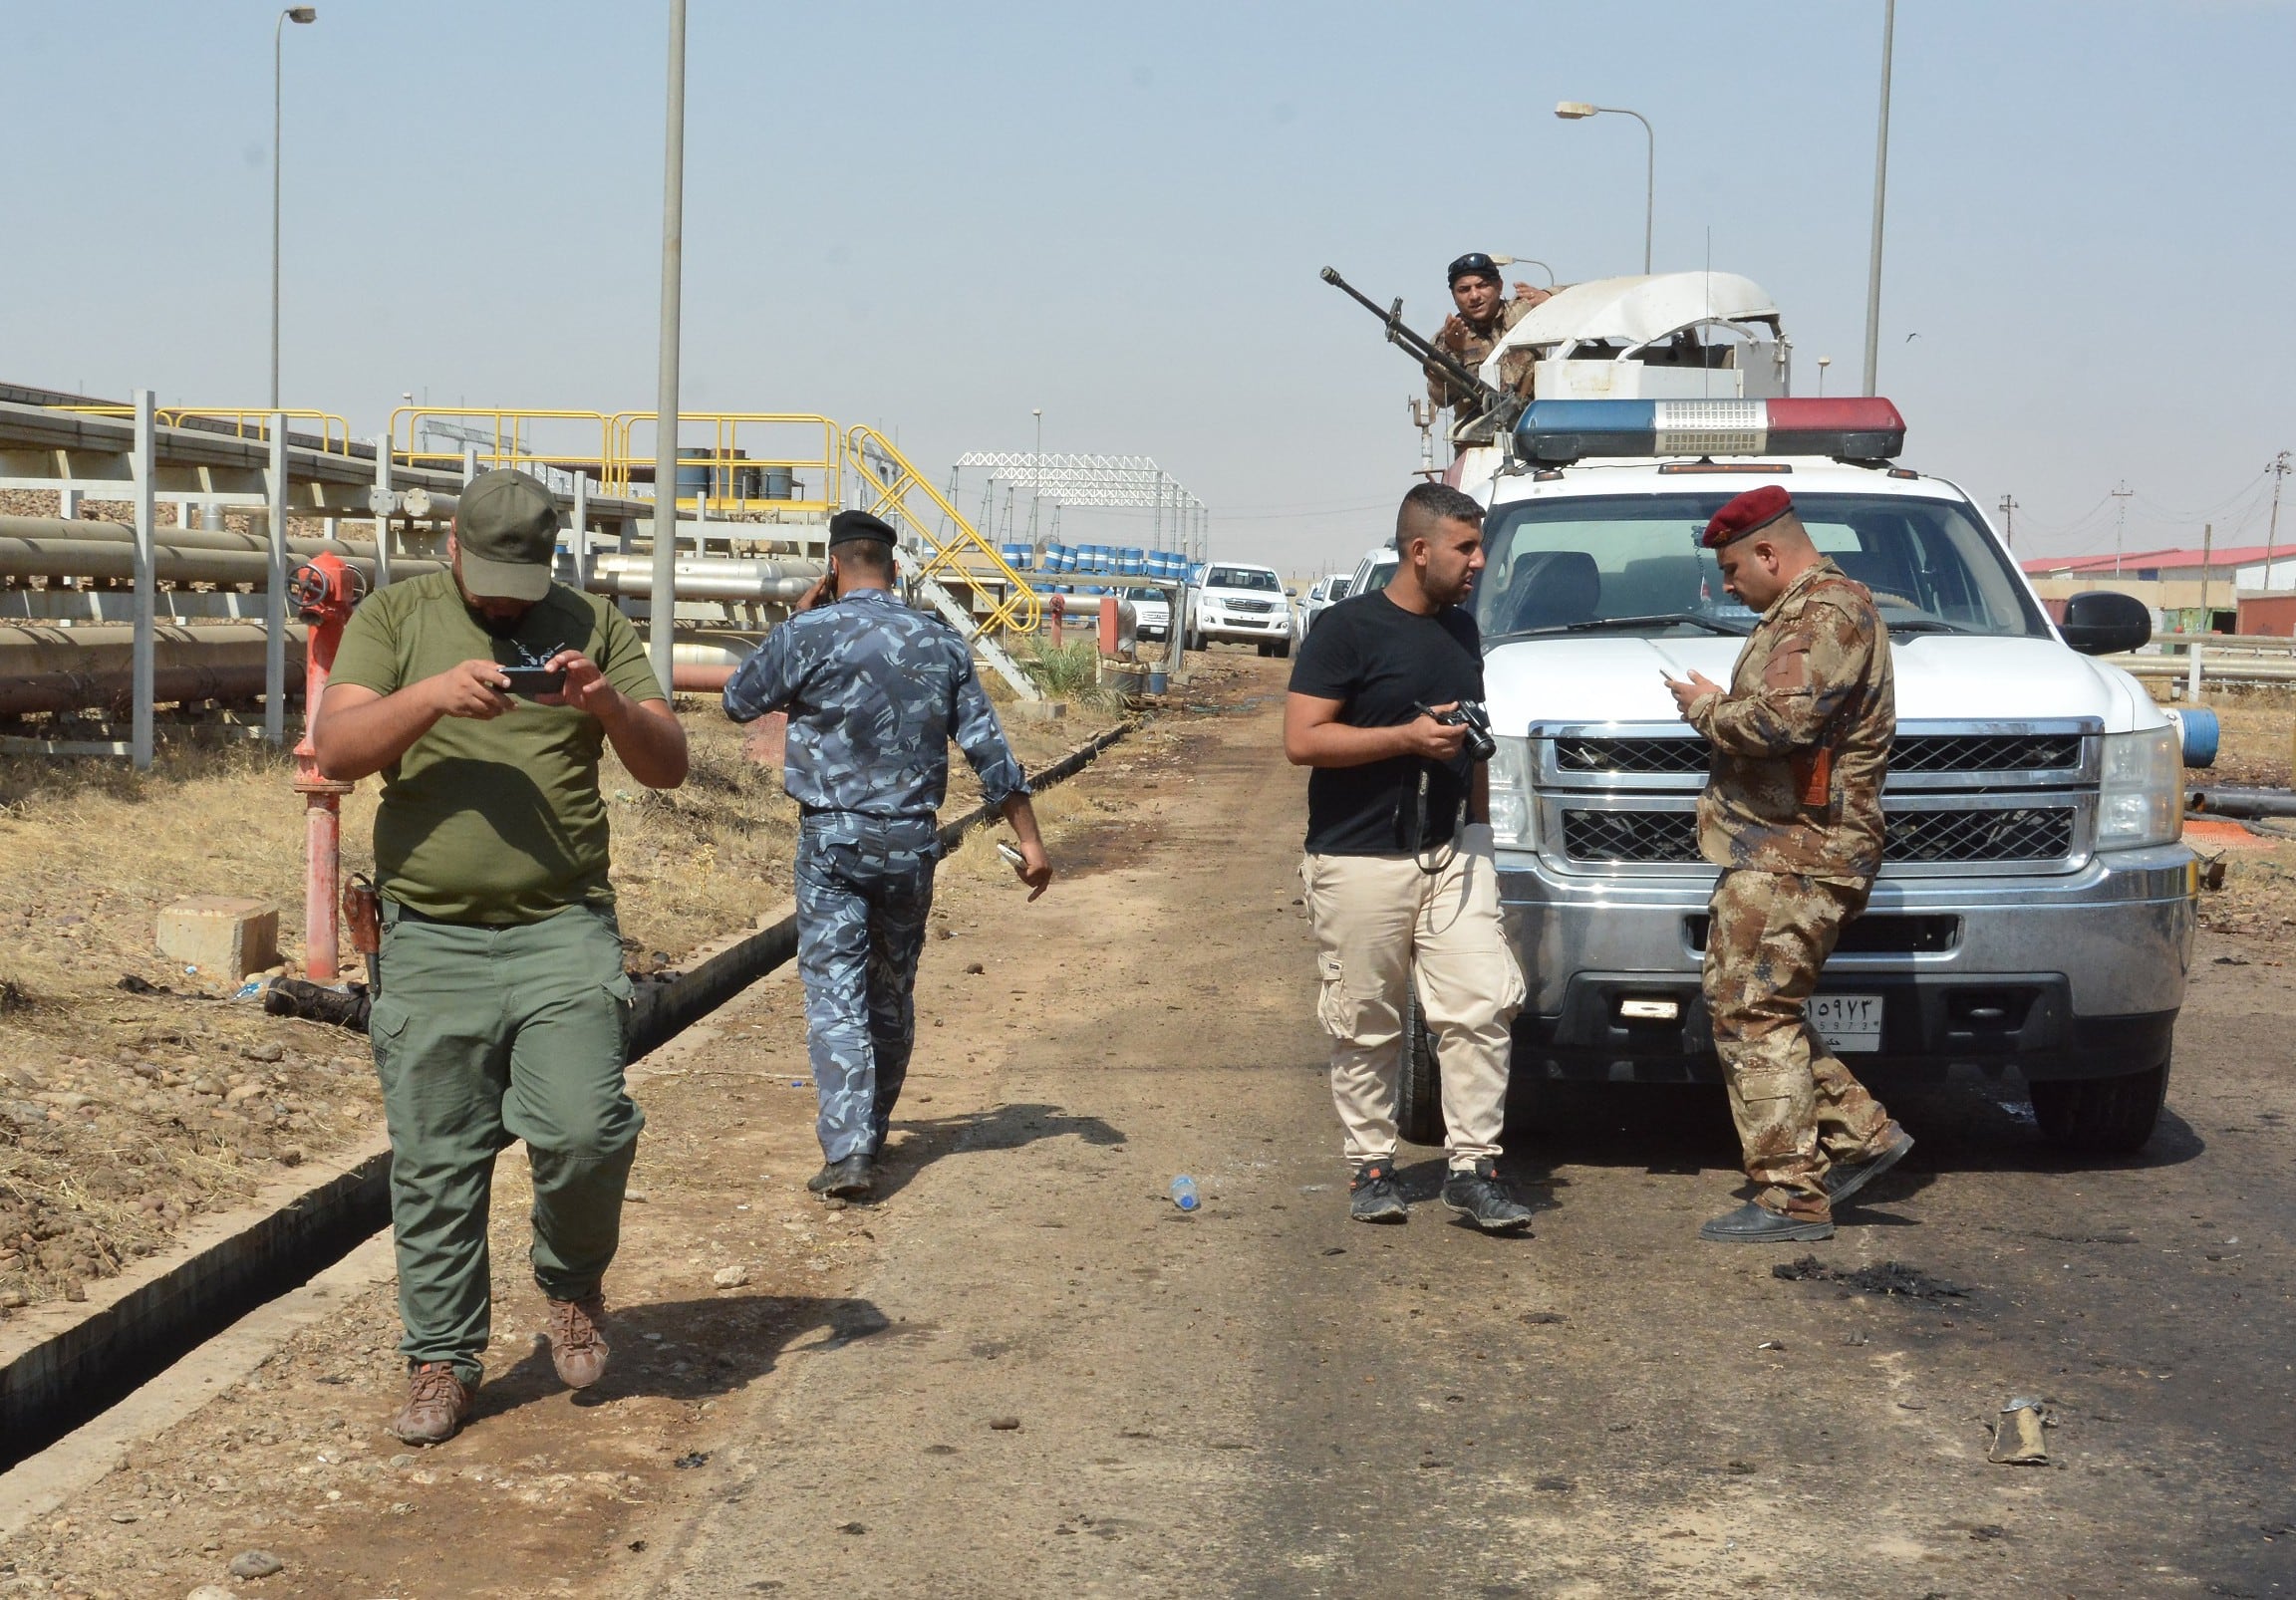 Fueron tres personas las que atacaron la central eléctrica al norte de Bagdad.